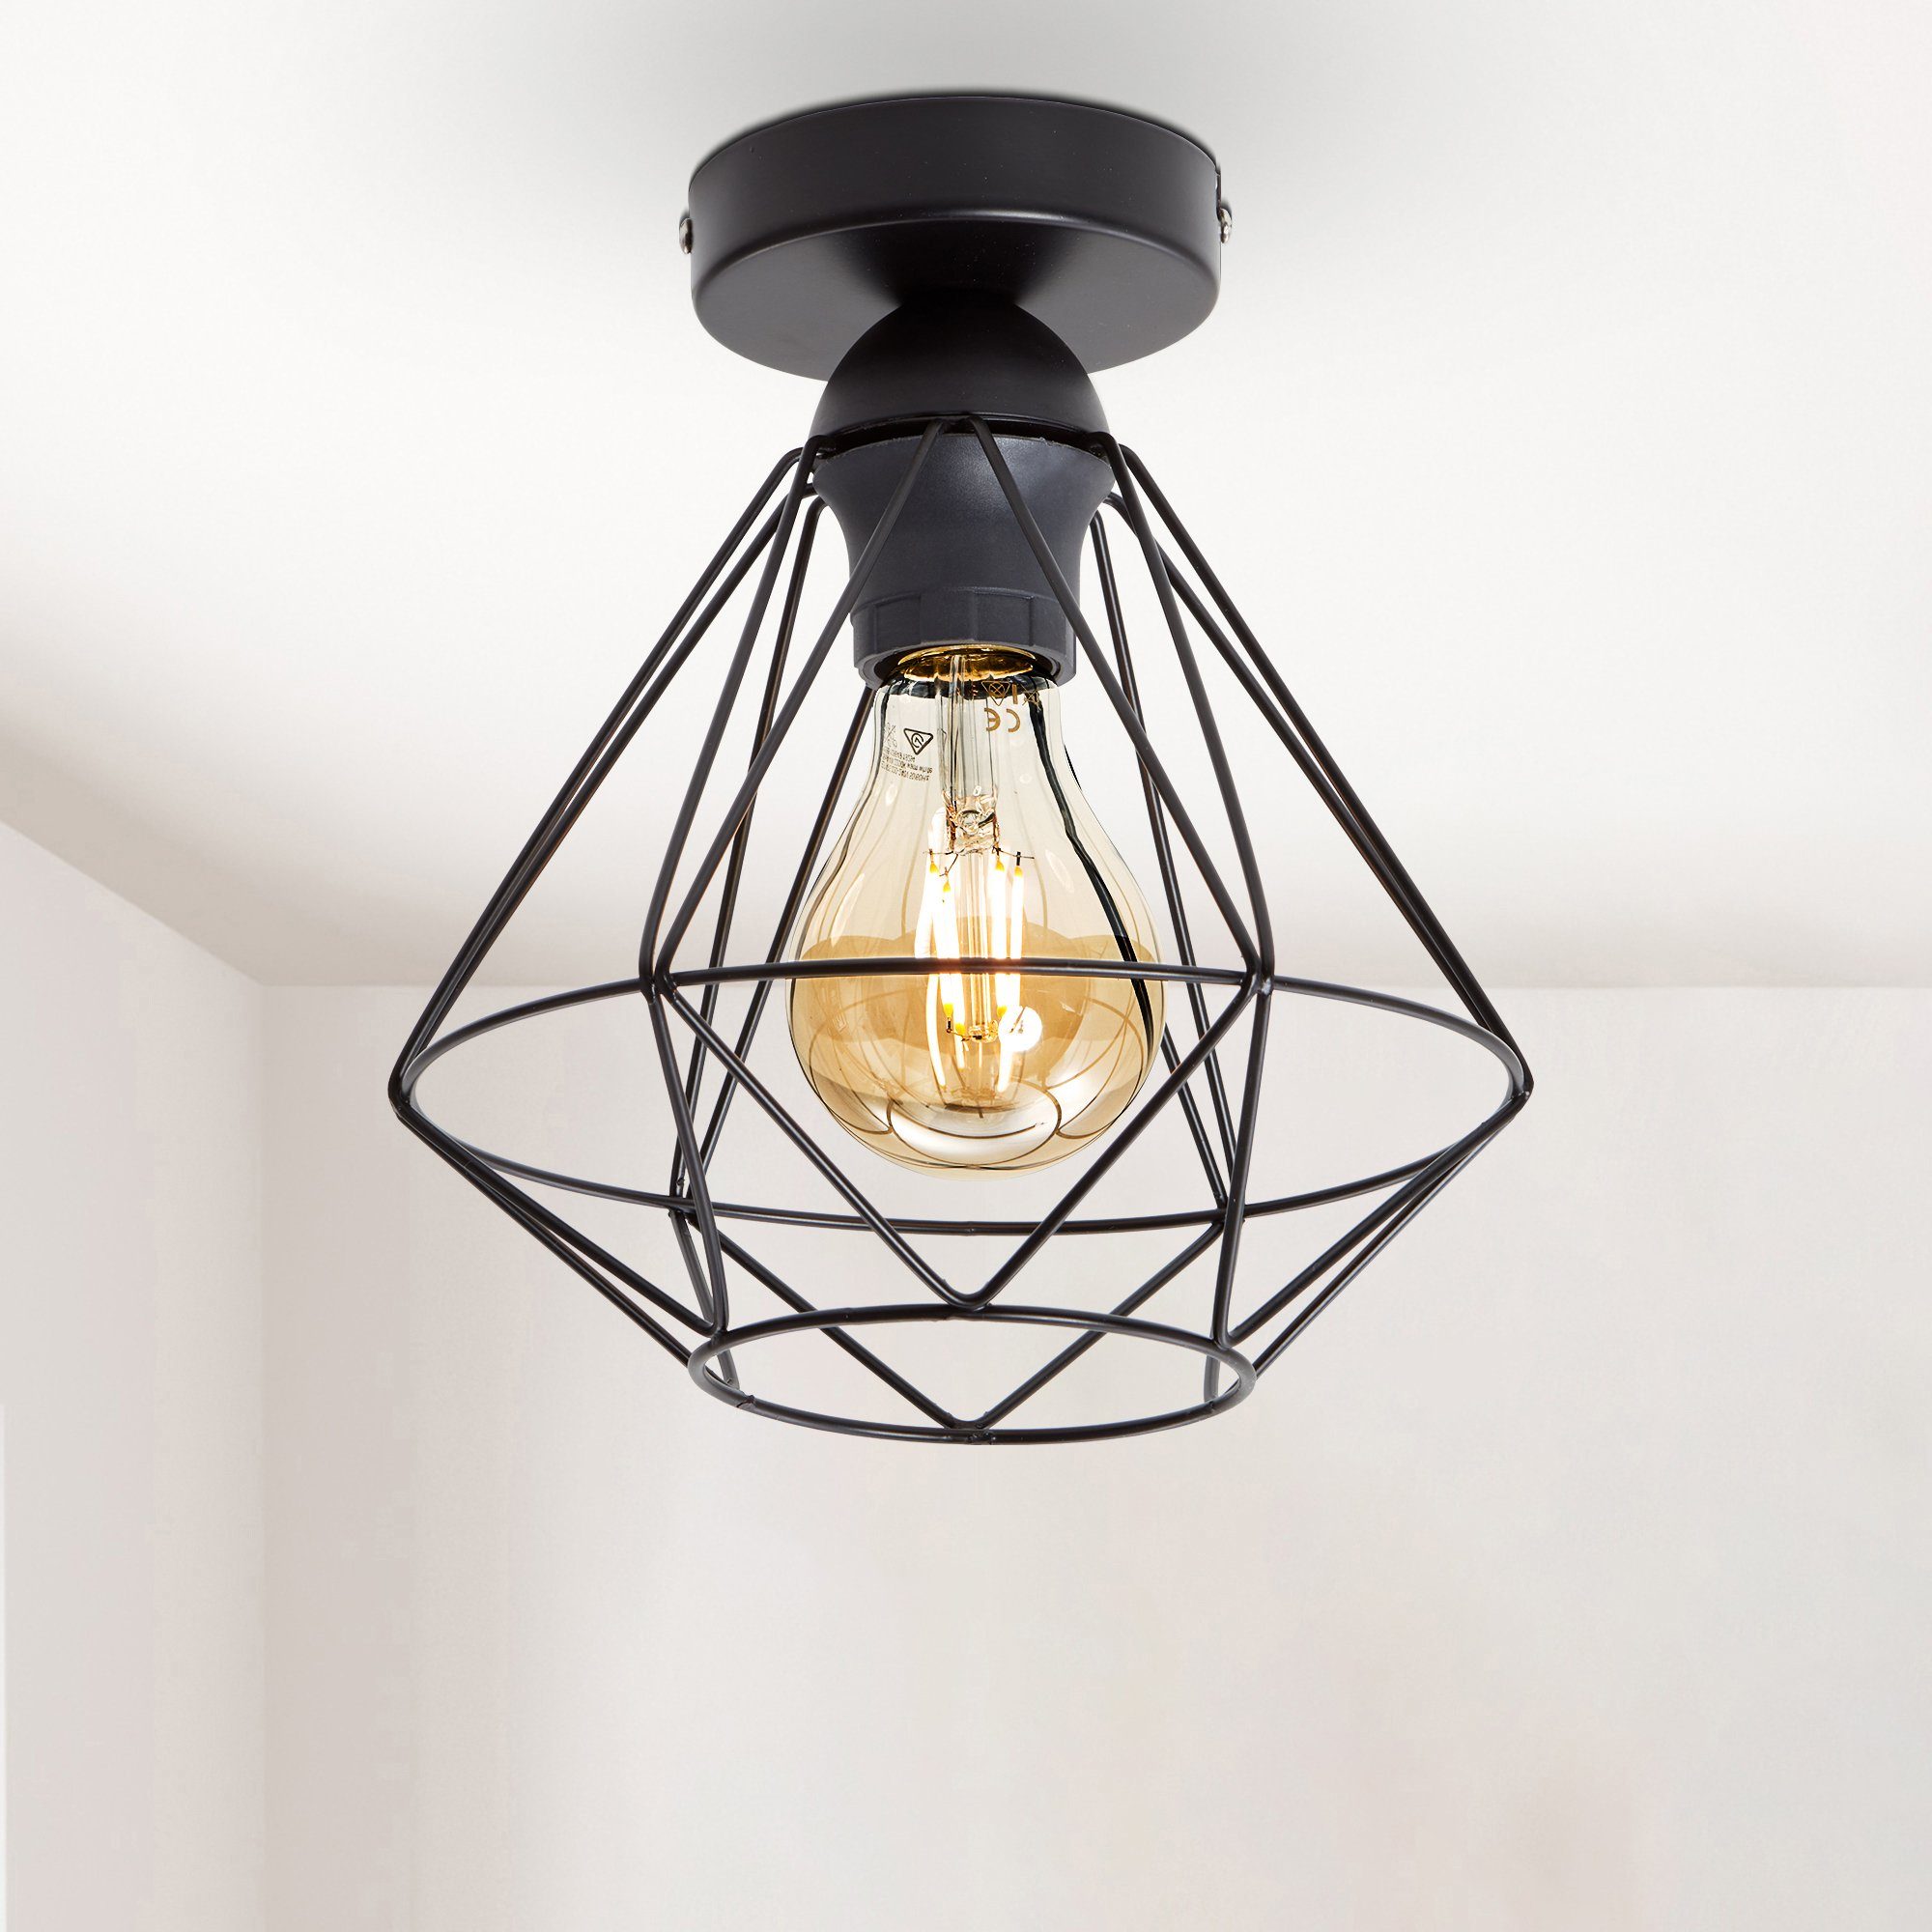 LED Deckenlampe Wandlampe Küchenlampen Metall Rahmen 6906F-30W-Black 